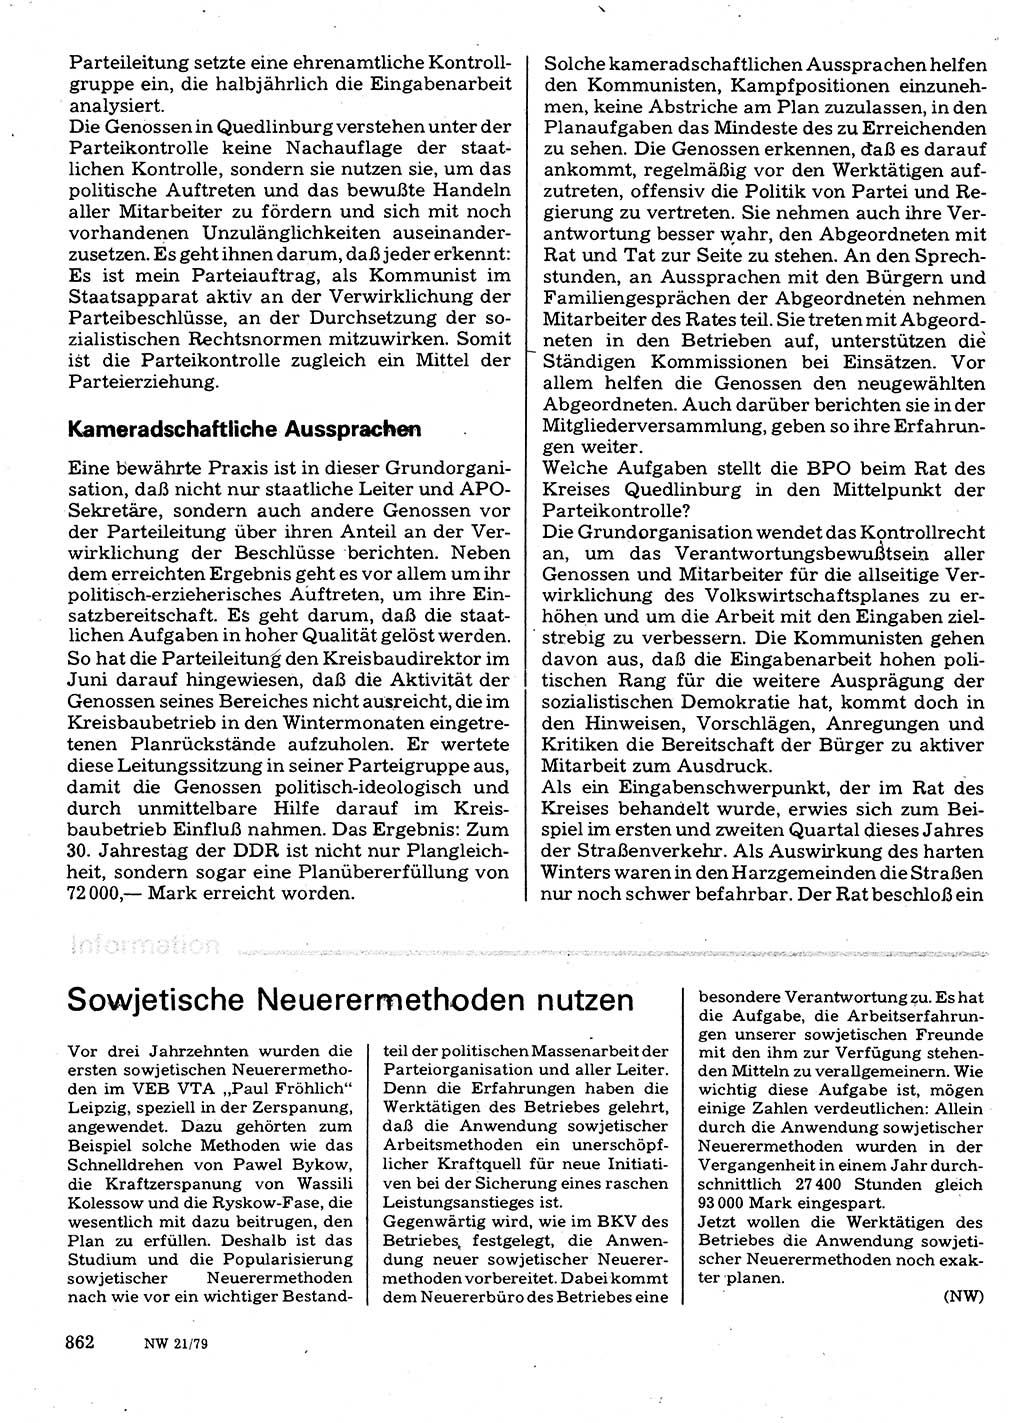 Neuer Weg (NW), Organ des Zentralkomitees (ZK) der SED (Sozialistische Einheitspartei Deutschlands) für Fragen des Parteilebens, 34. Jahrgang [Deutsche Demokratische Republik (DDR)] 1979, Seite 862 (NW ZK SED DDR 1979, S. 862)